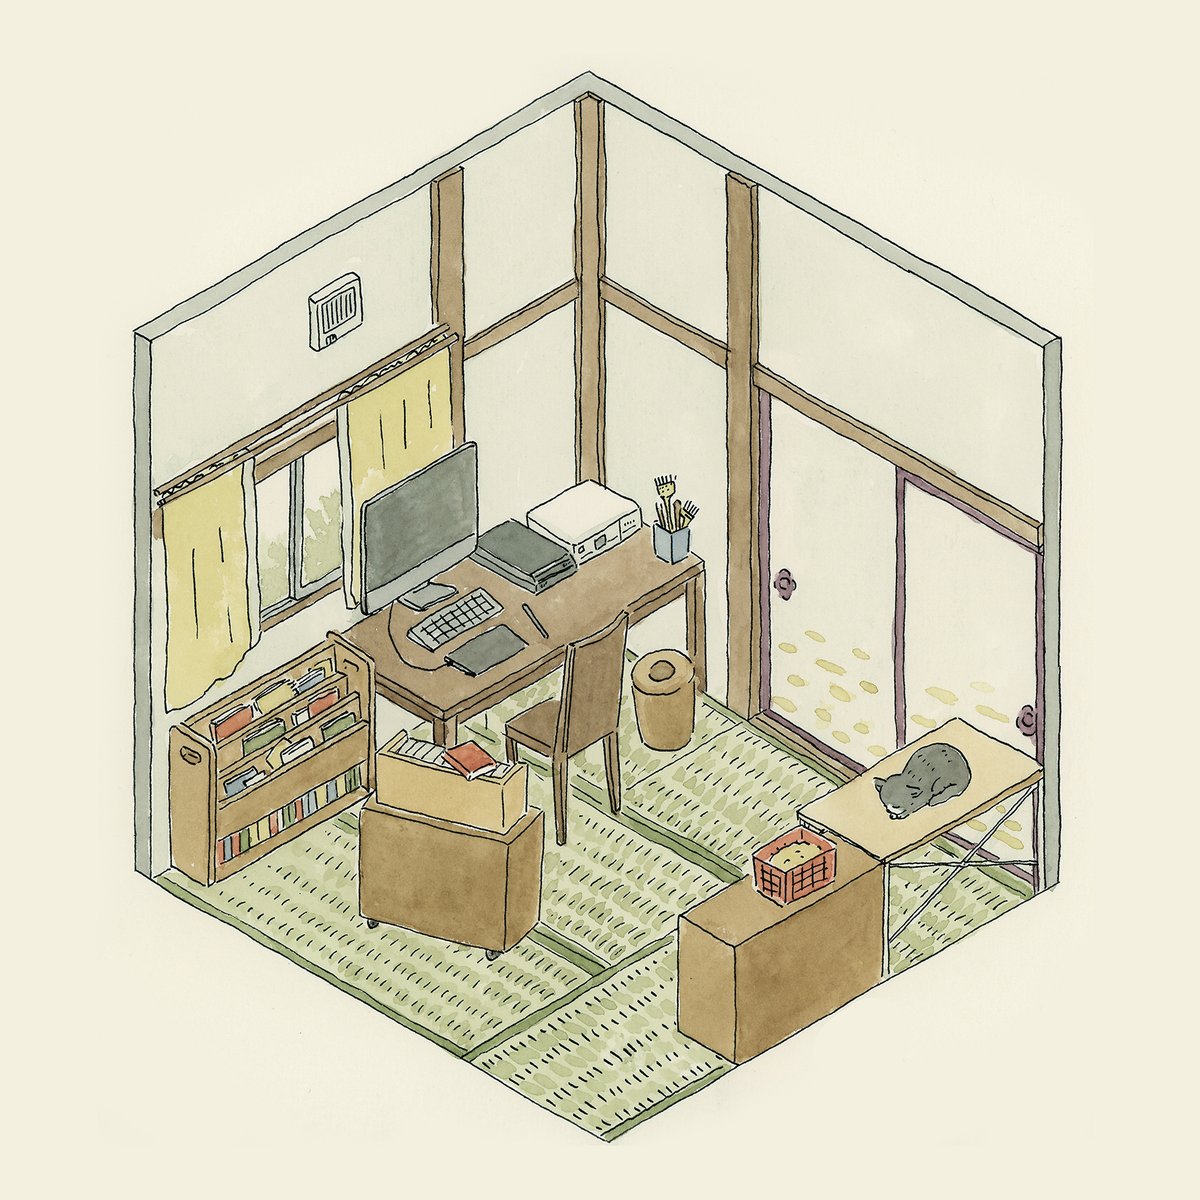 「1年半前くらいに描いた作業部屋。築50年越えの小さな借家の四畳半。今は、猫がいる」|こんどう しずのイラスト